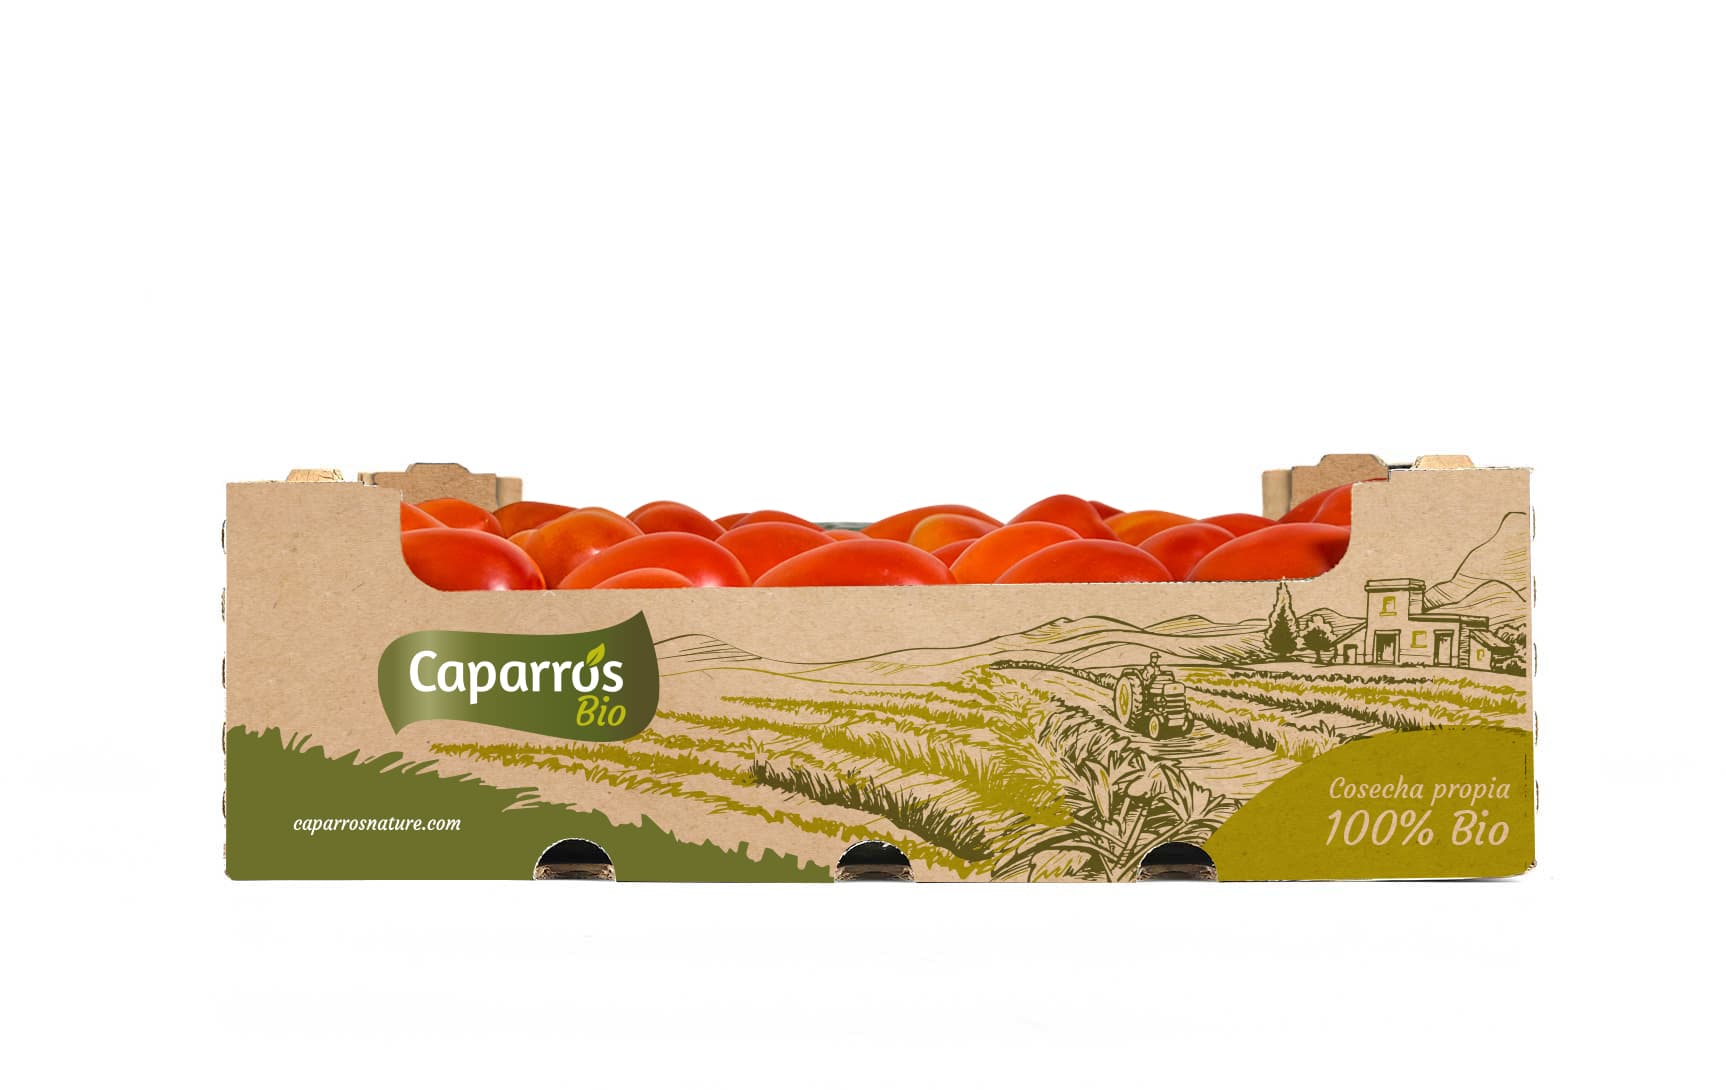 Packaging plum tomato bio - Caparrós